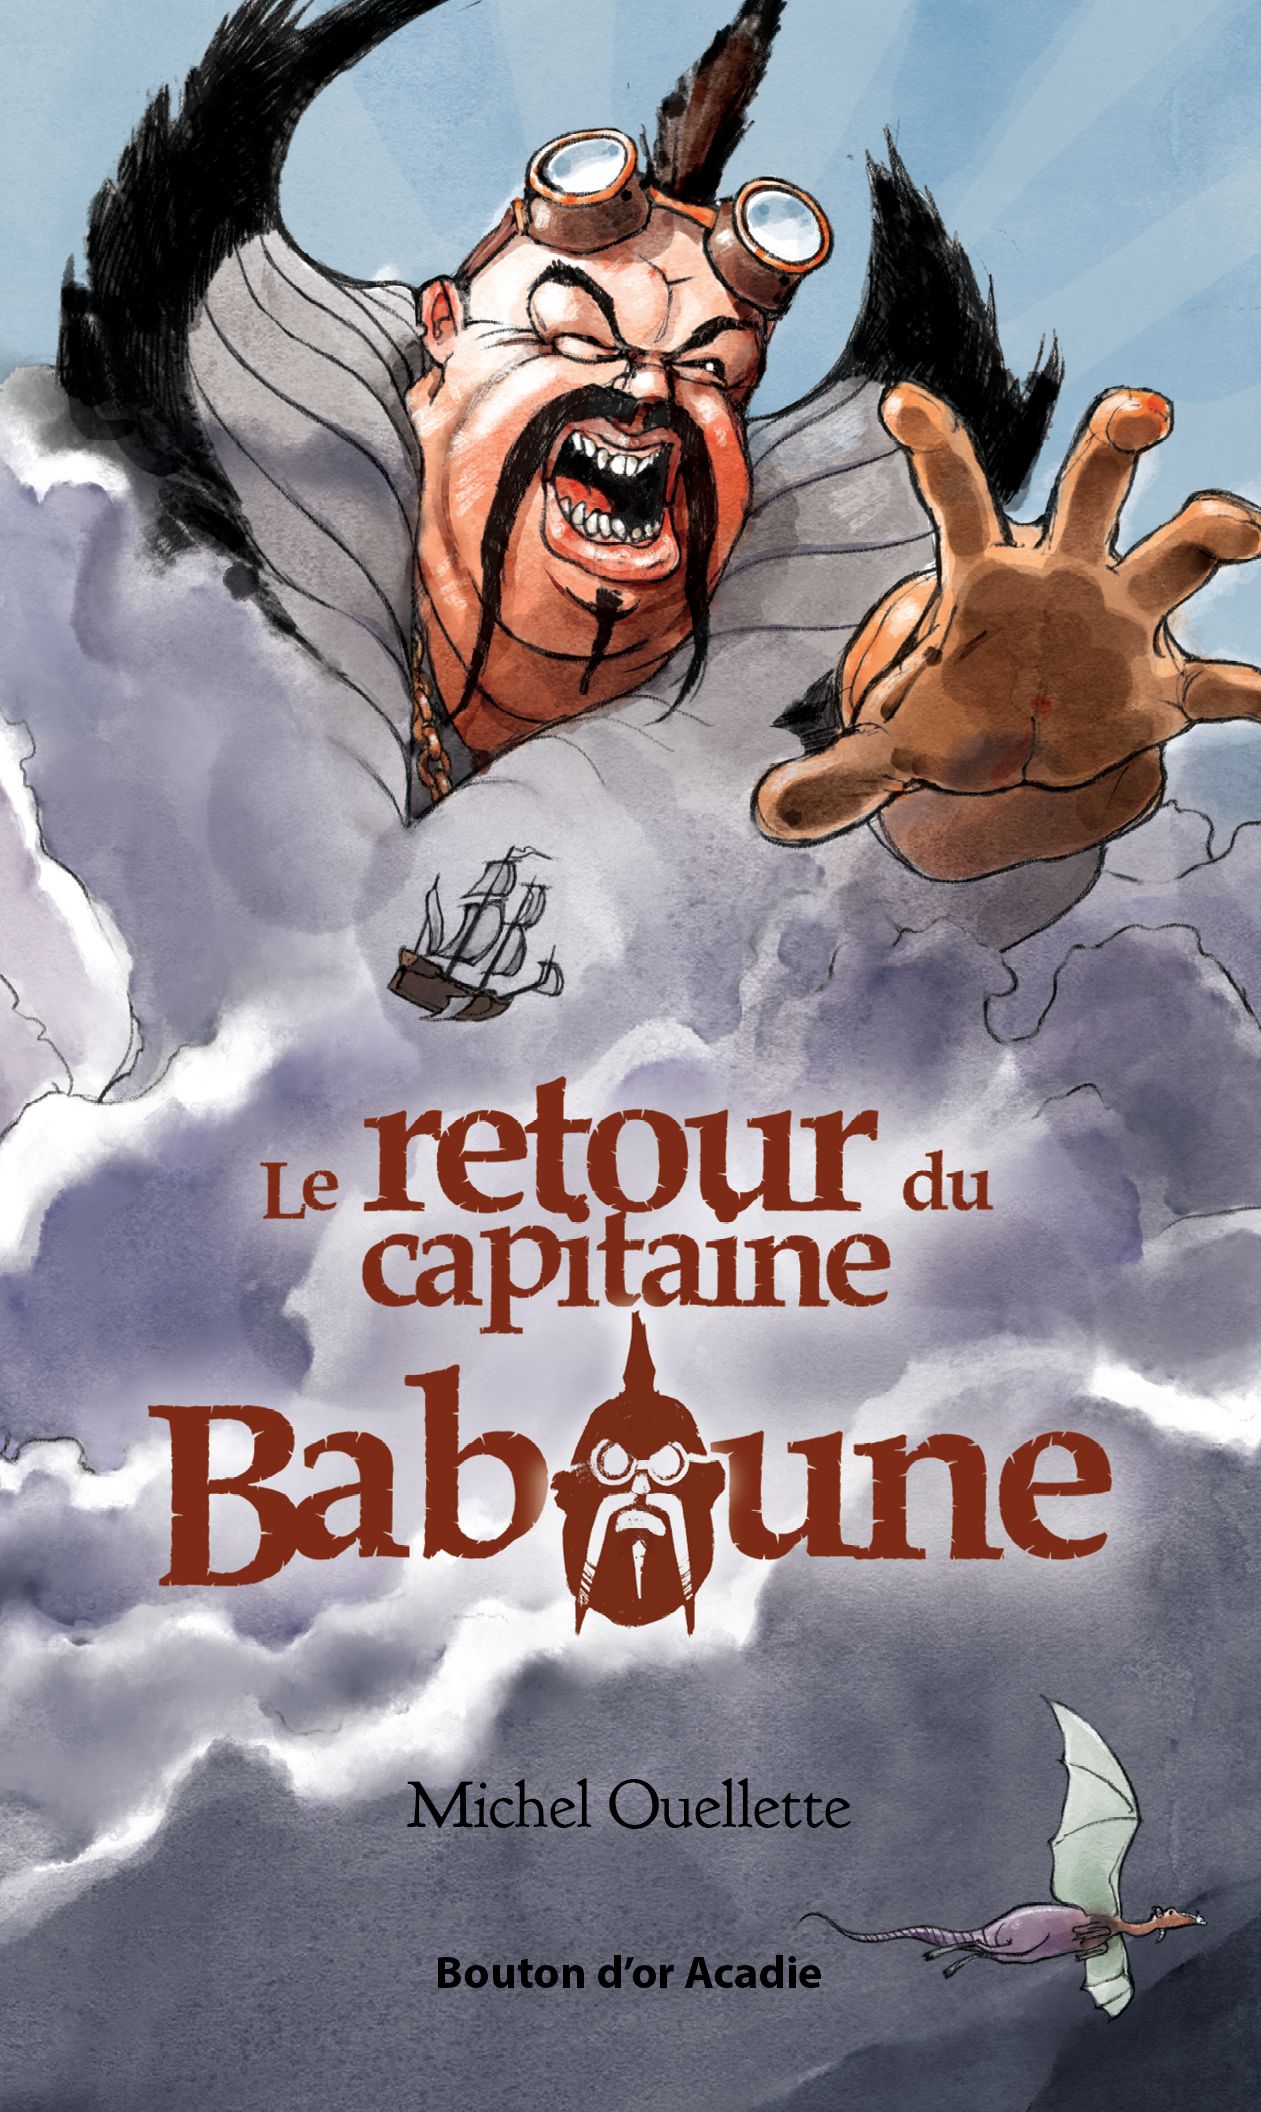 Young Reader Review: Le retour du Capitaine Baboune by Michel Ouellette